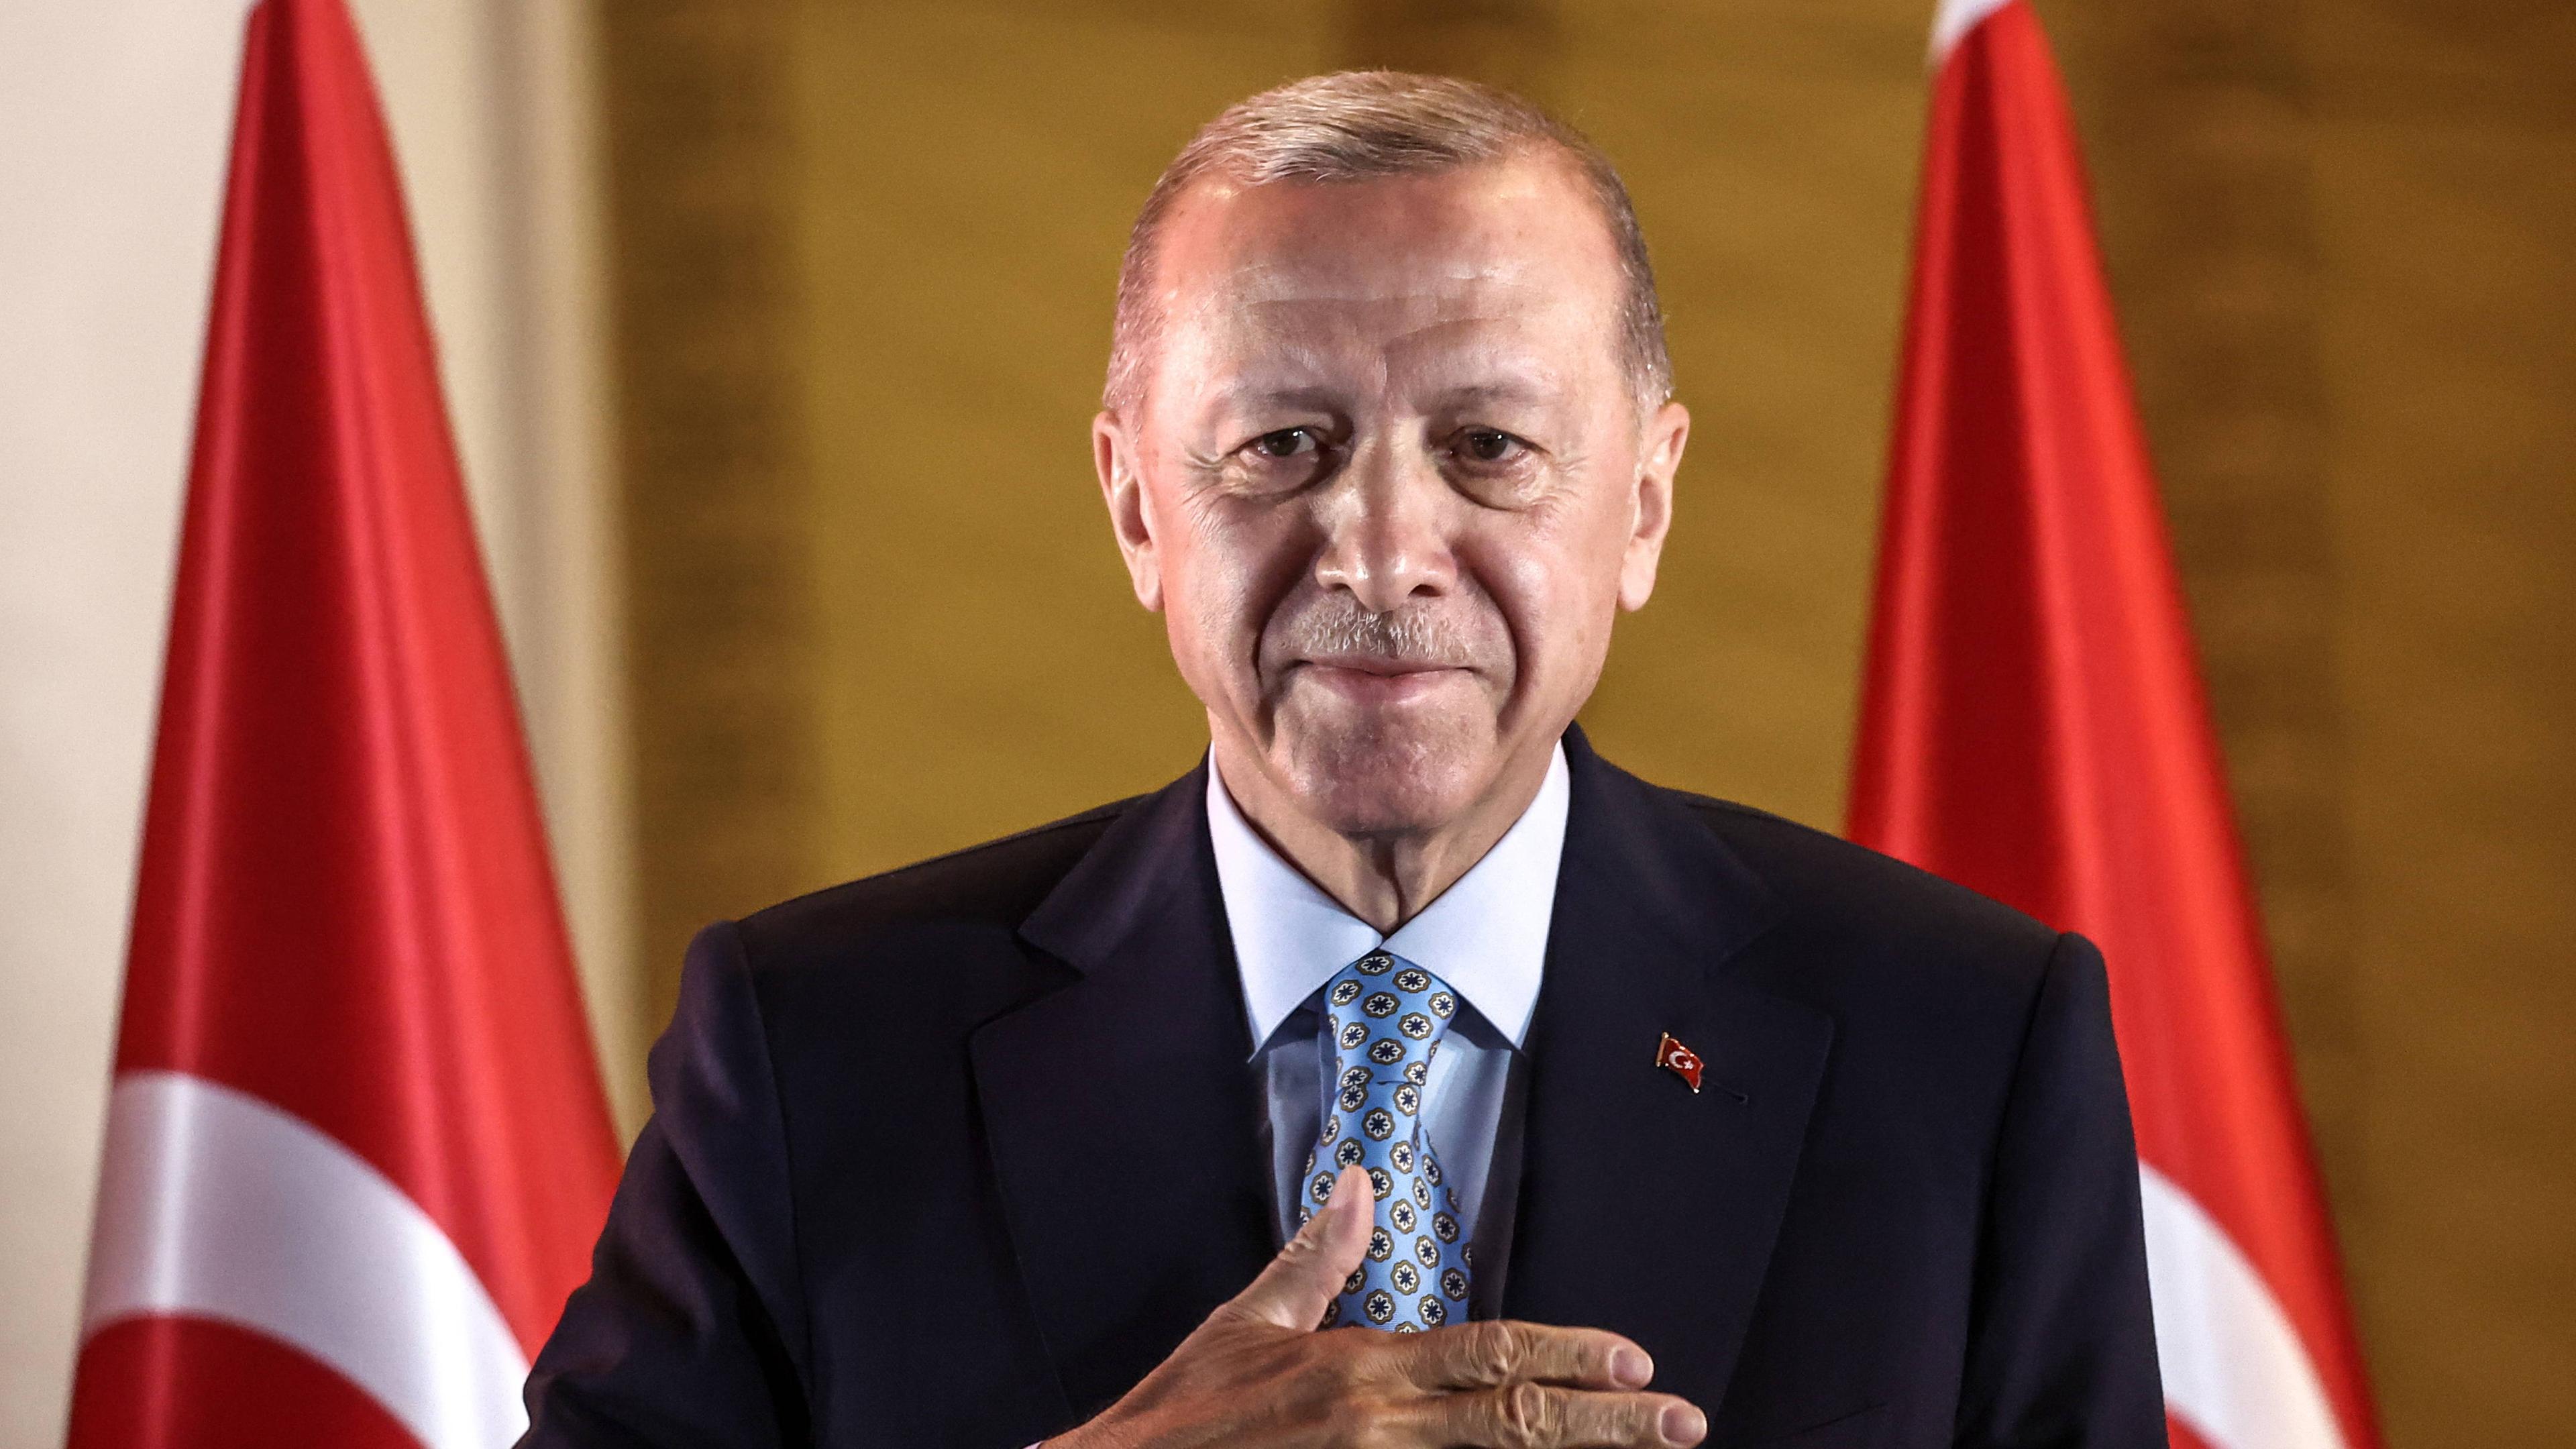 ZDFheute live: Was kommt nach Erdogans Wahlsieg?